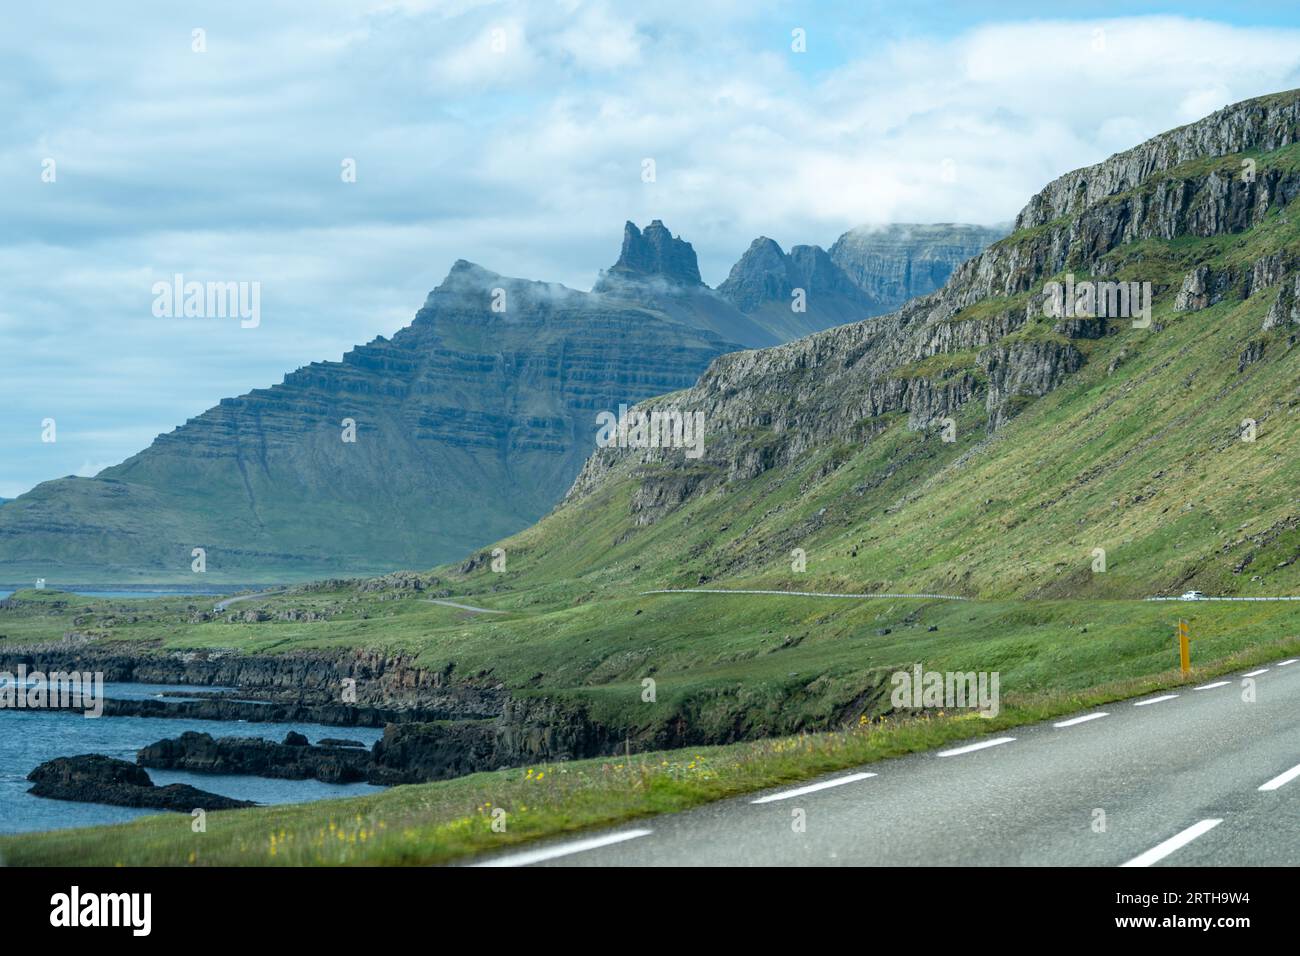 La célèbre rocade qui tourne et tourne à travers les pittoresques fjords de l'est de l'Islande pendant l'été, avec des montagnes imposantes Banque D'Images